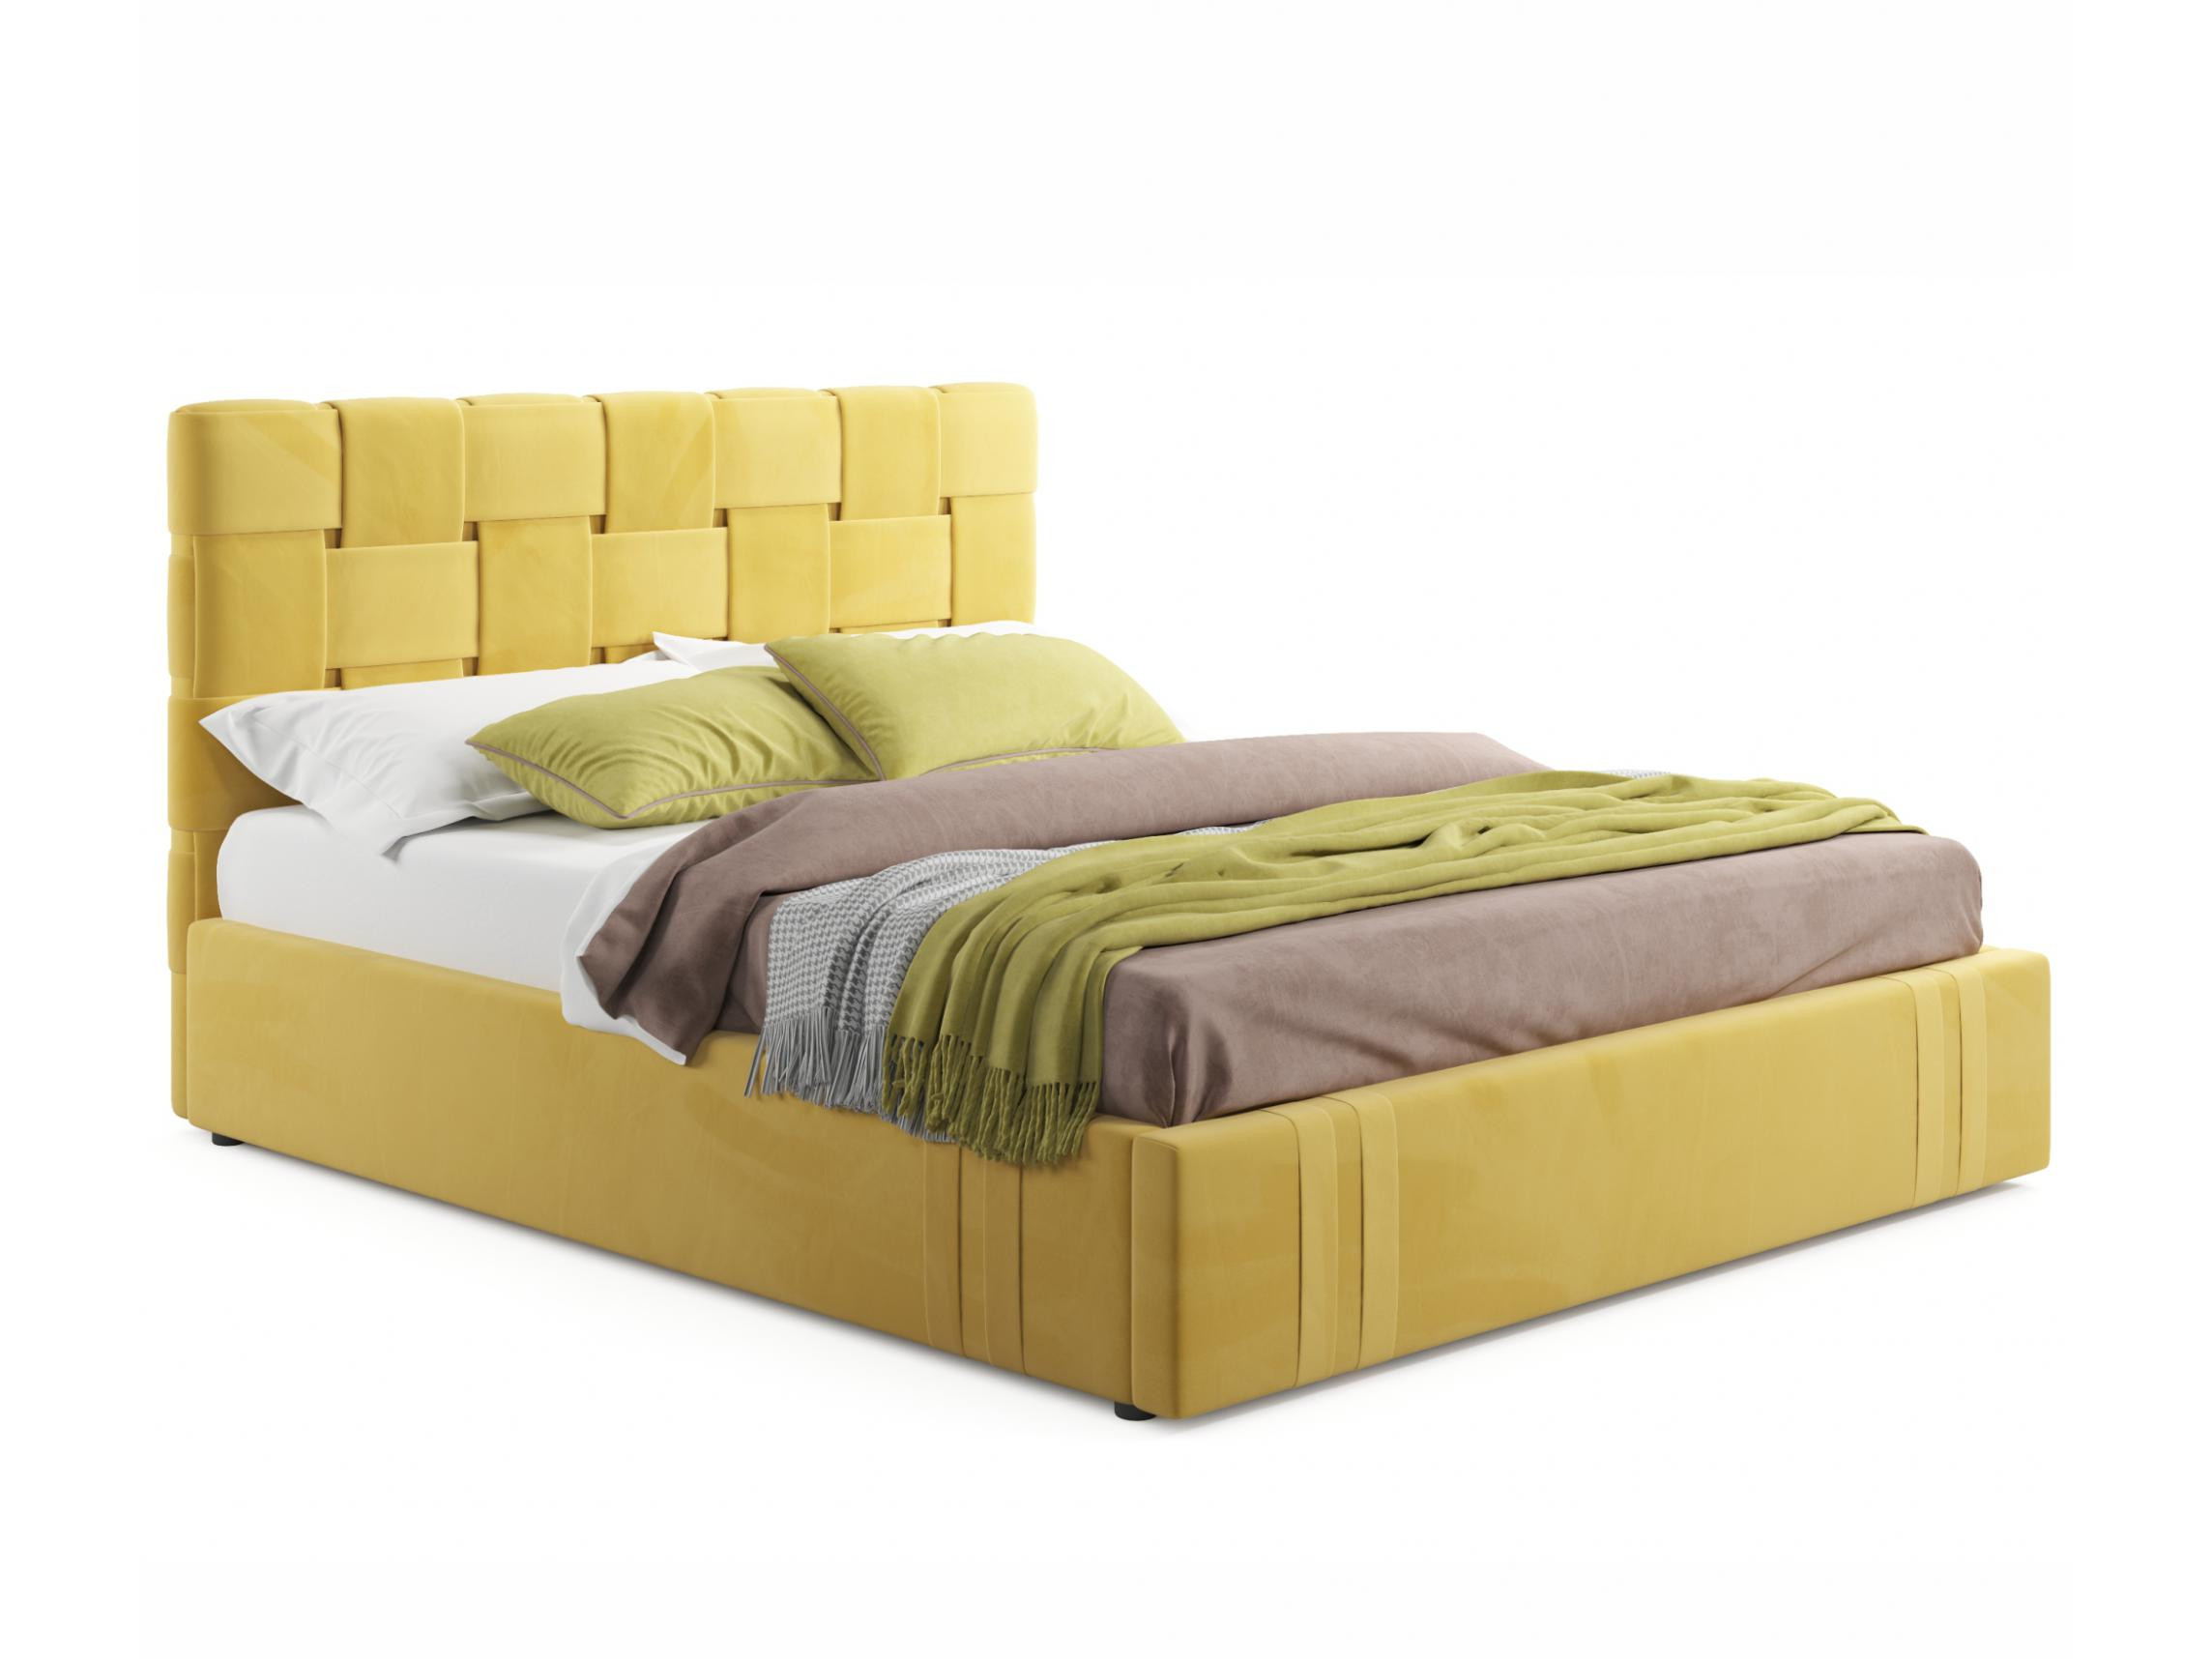 Мягкая кровать Tiffany 1600 желтая с подъемным механизмом желтый, Желтый, Велюр, ДСП мягкая кровать tiffany 1600 желтая с подъемным механизмом желтый желтый велюр дсп